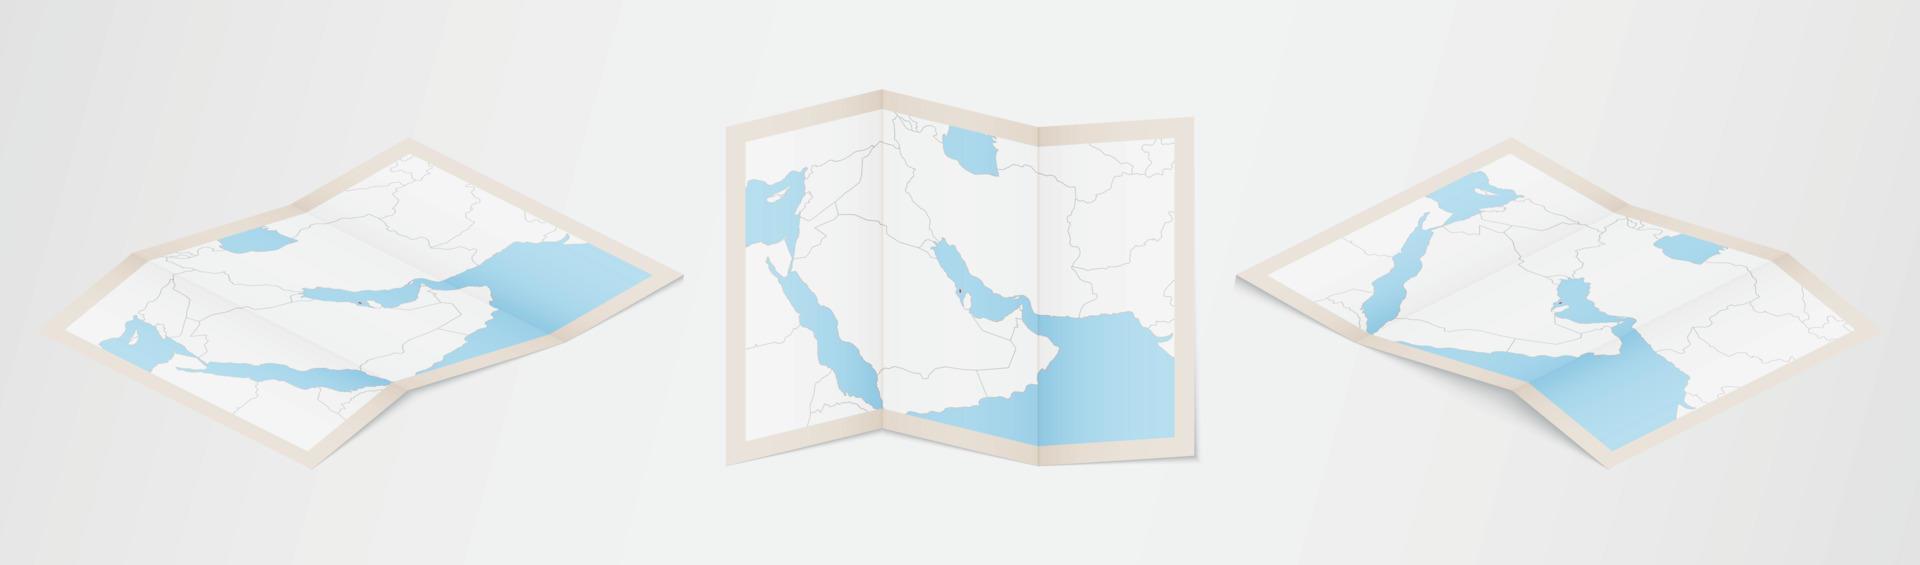 mapa plegado de bahrein en tres versiones diferentes. vector